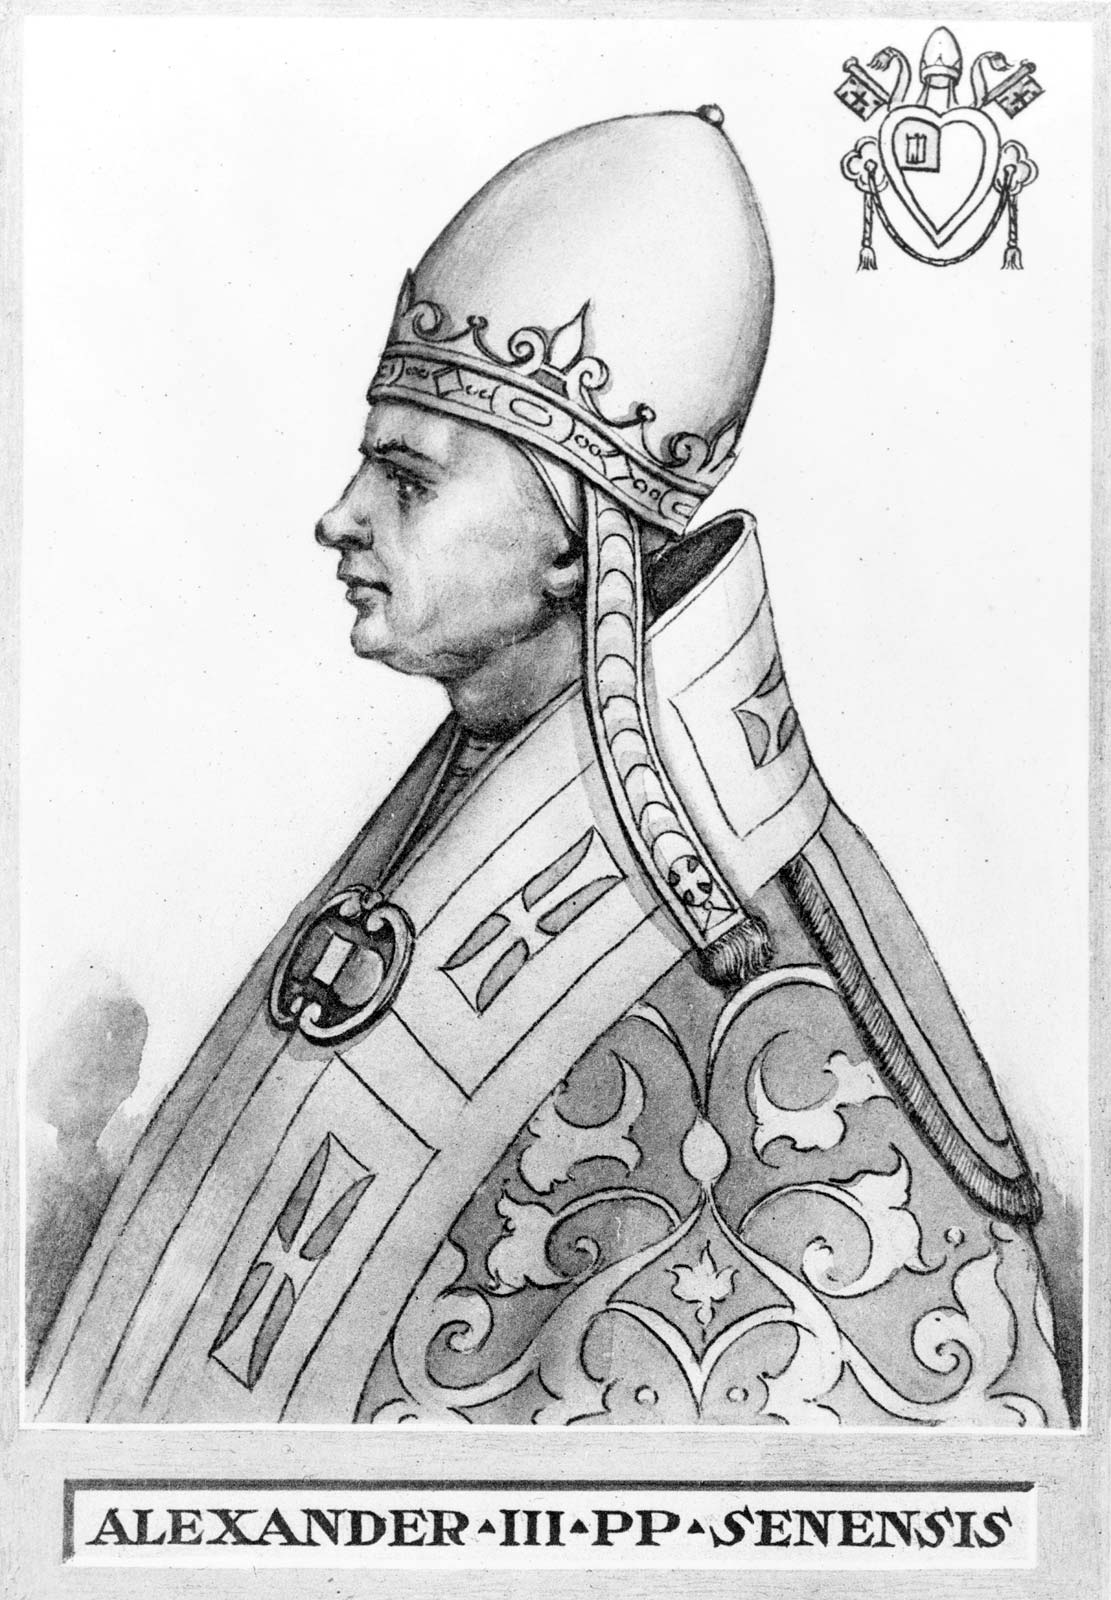 Pope Alexander III